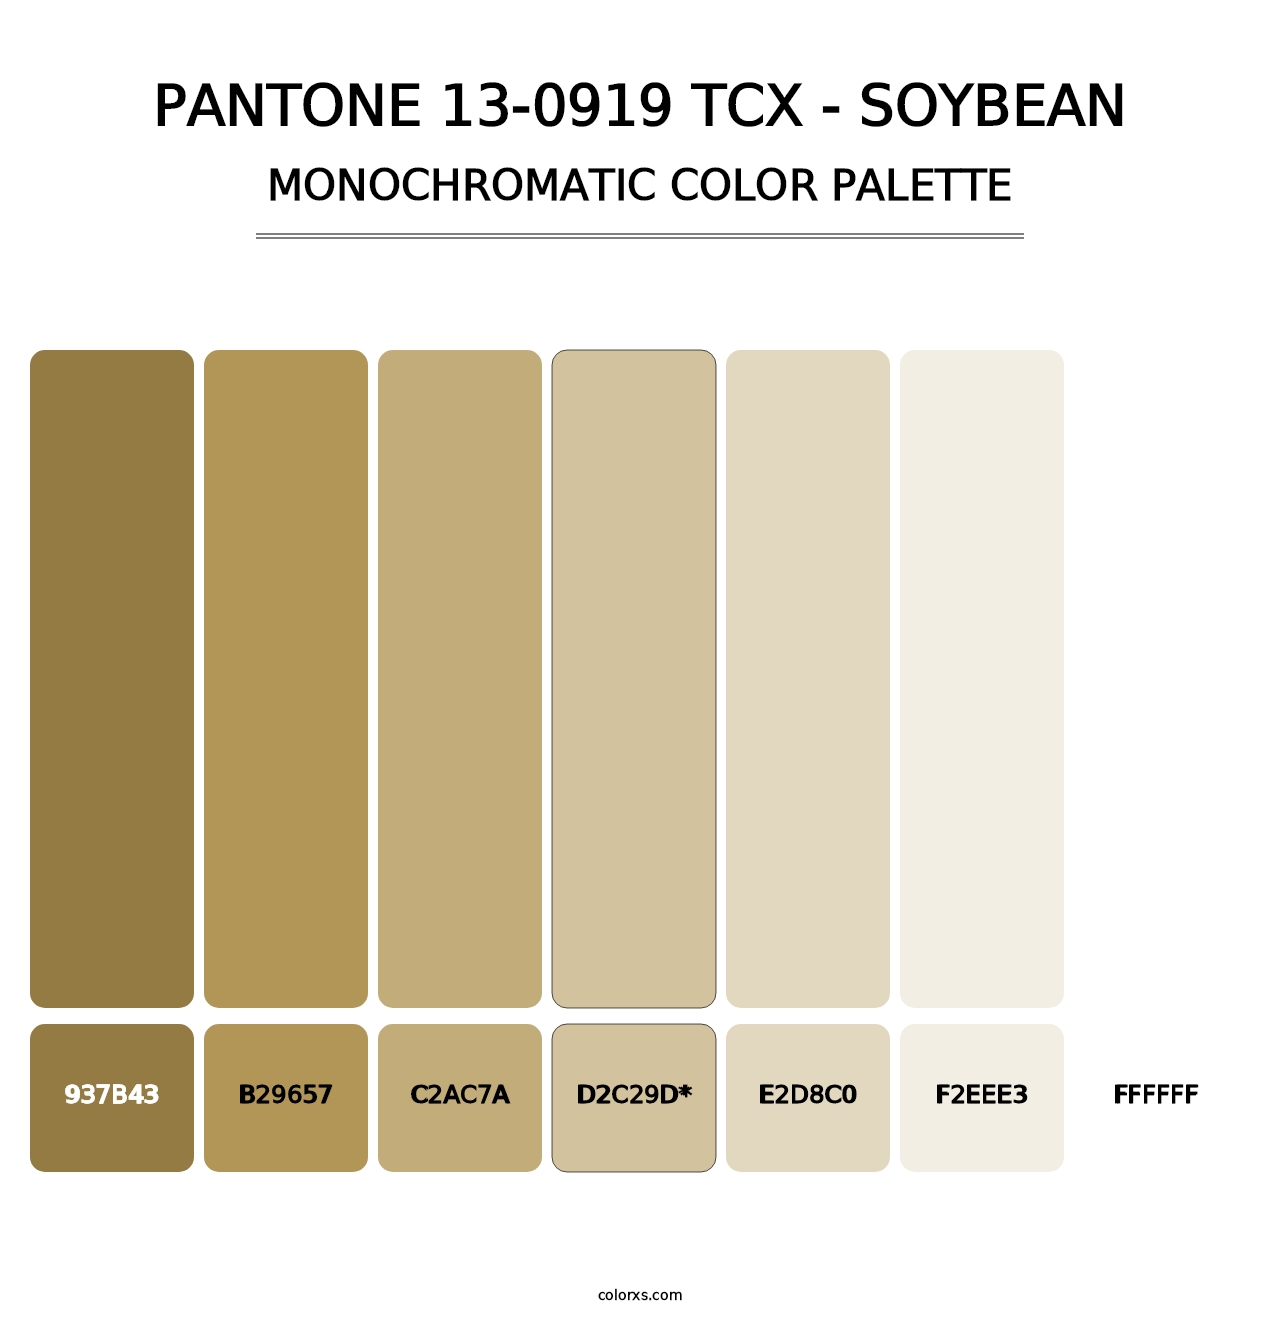 PANTONE 13-0919 TCX - Soybean - Monochromatic Color Palette